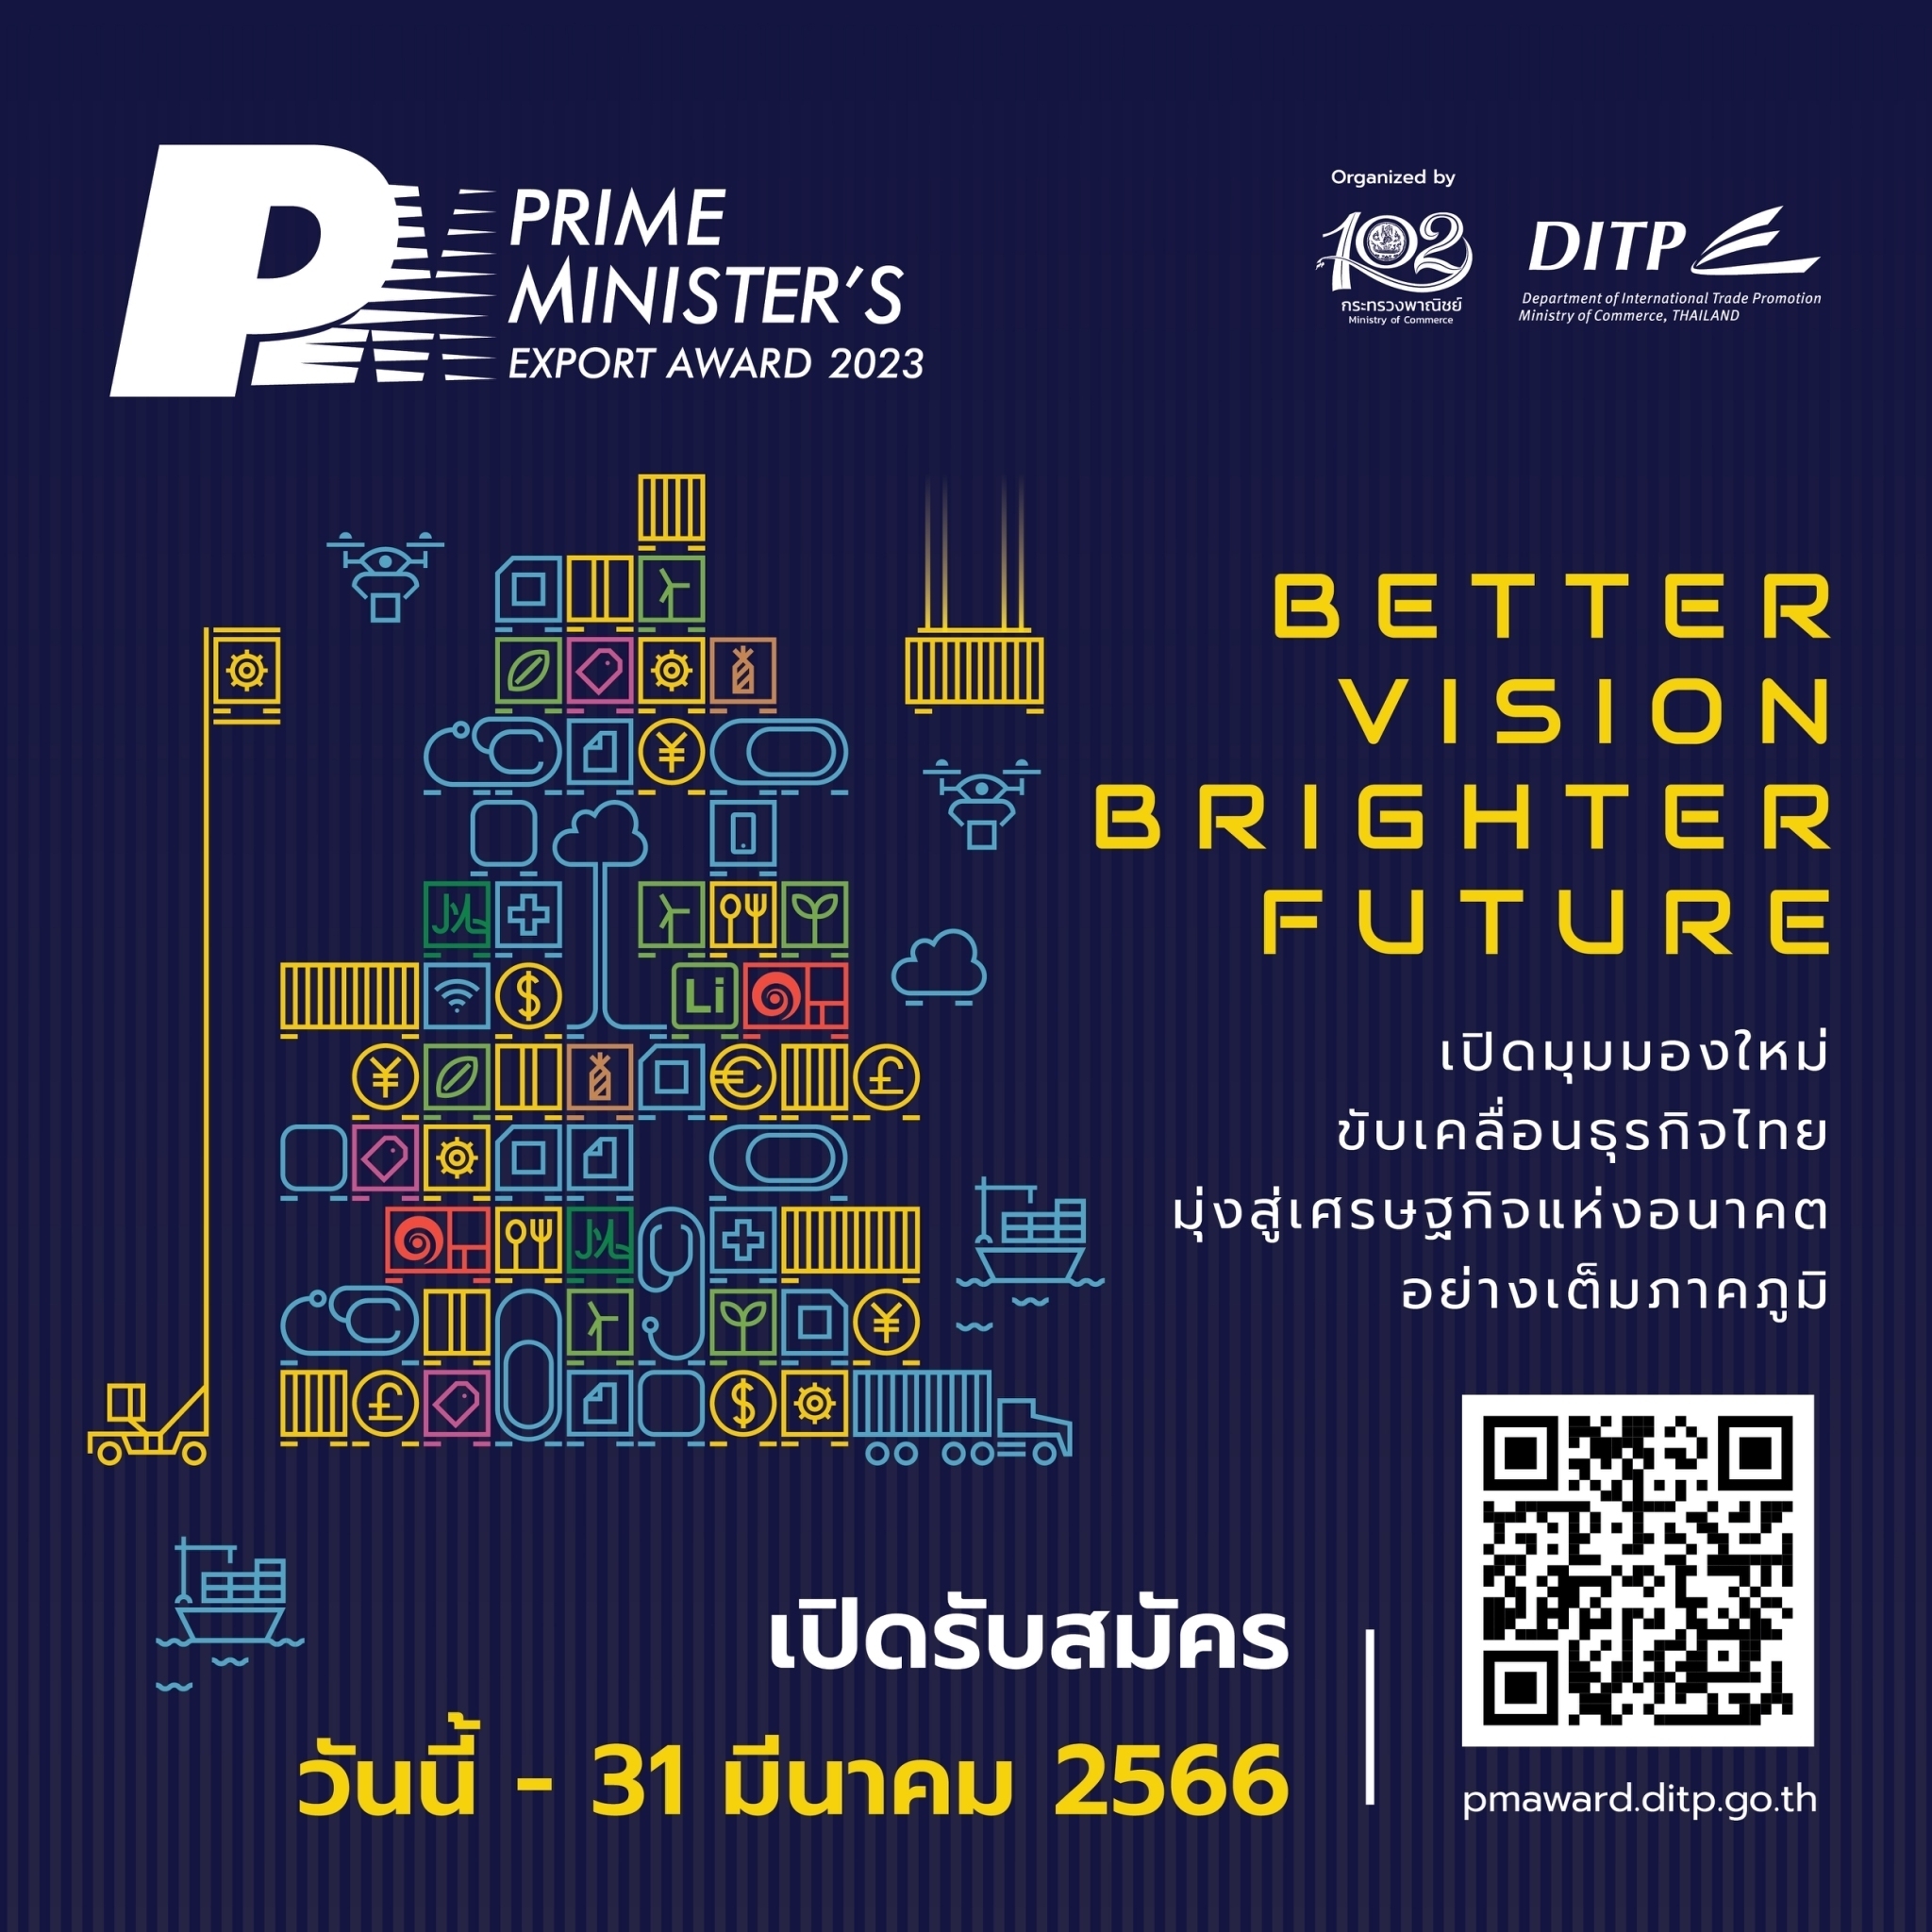 หอการค้าไทย ขอเชิญชวนสมาชิกฯ และผู้ประกอบการที่สนใจ สมัครเข้าร่วมโครงการ PM Award 2023 (Prime Minister’s Export Award 2023) หรือ รางวัลผู้ประกอบธุรกิจส่งออกดีเด่น ประจำปี 2566